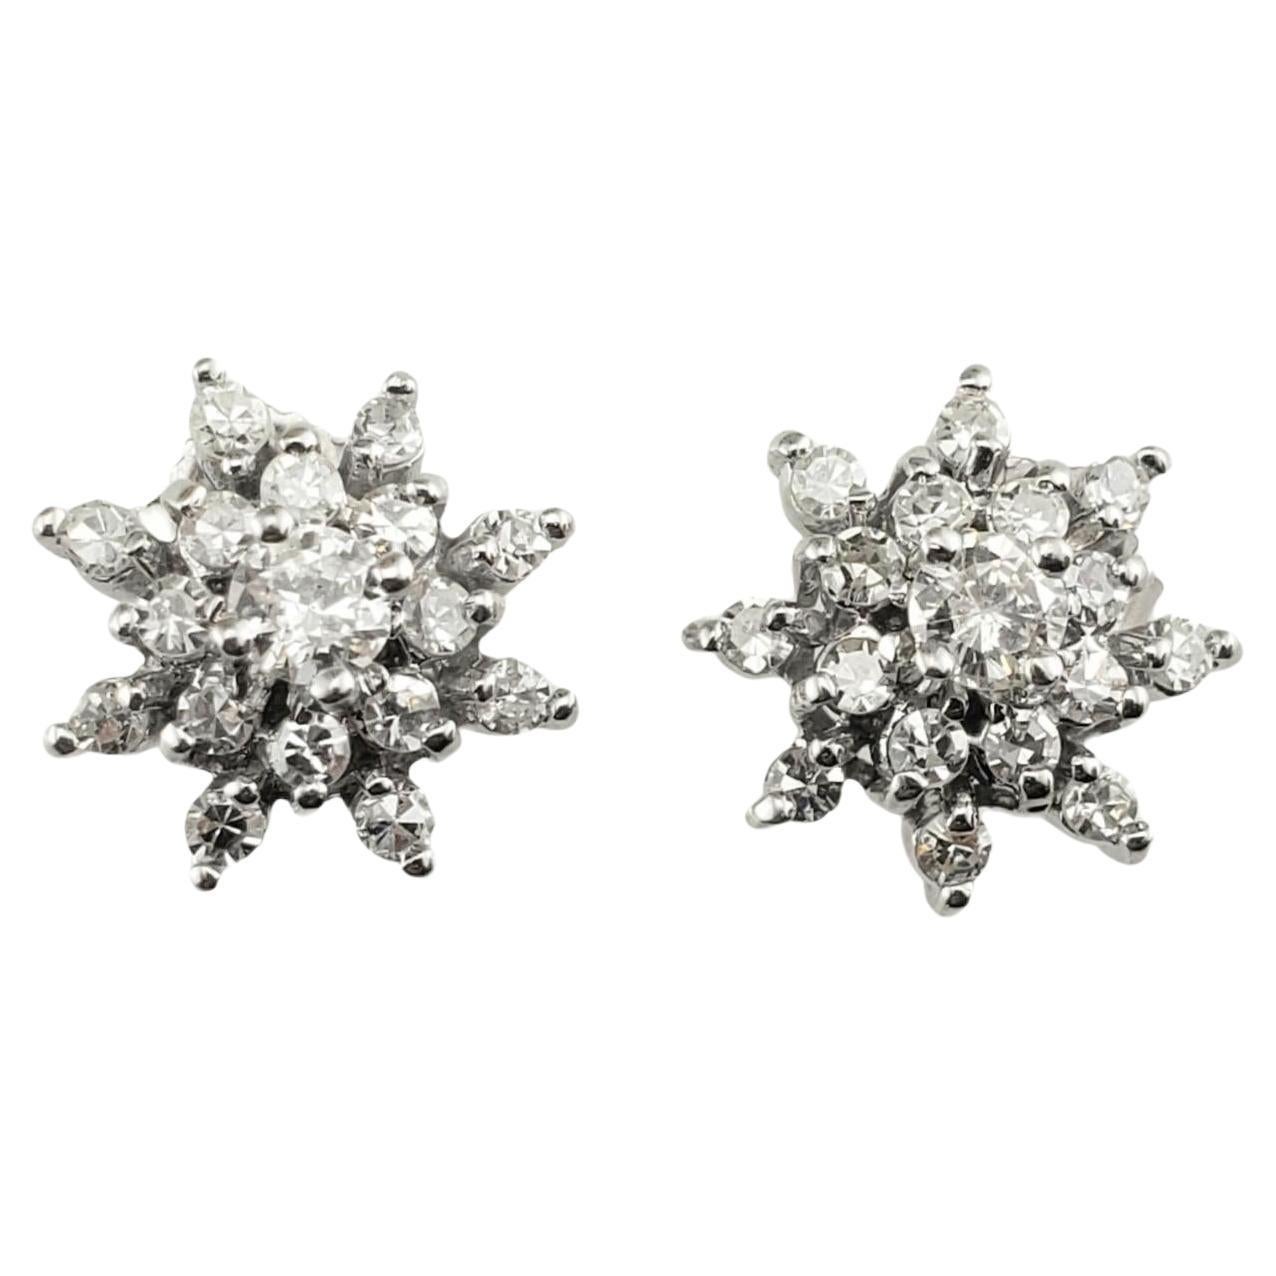 10 Karat White Gold Diamond Cluster Earrings #16239 For Sale